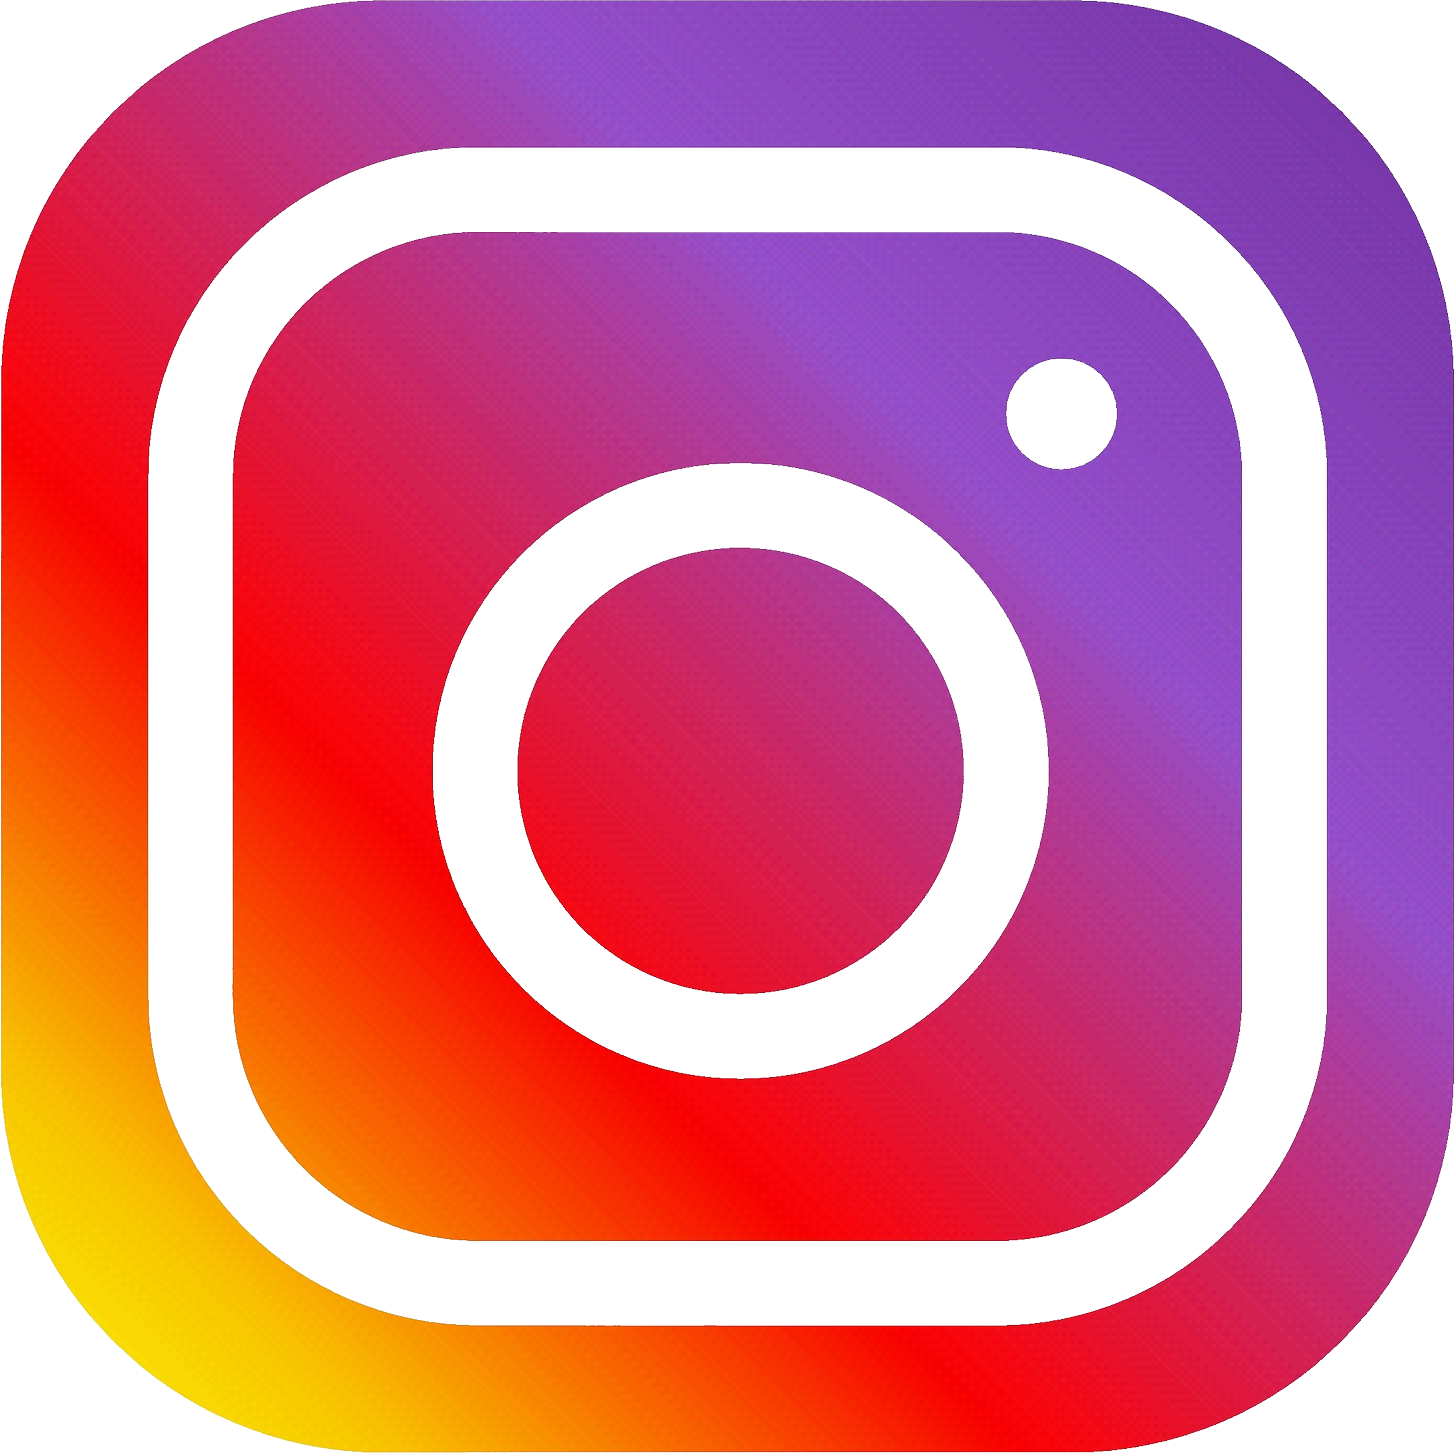 logo_instagram.png